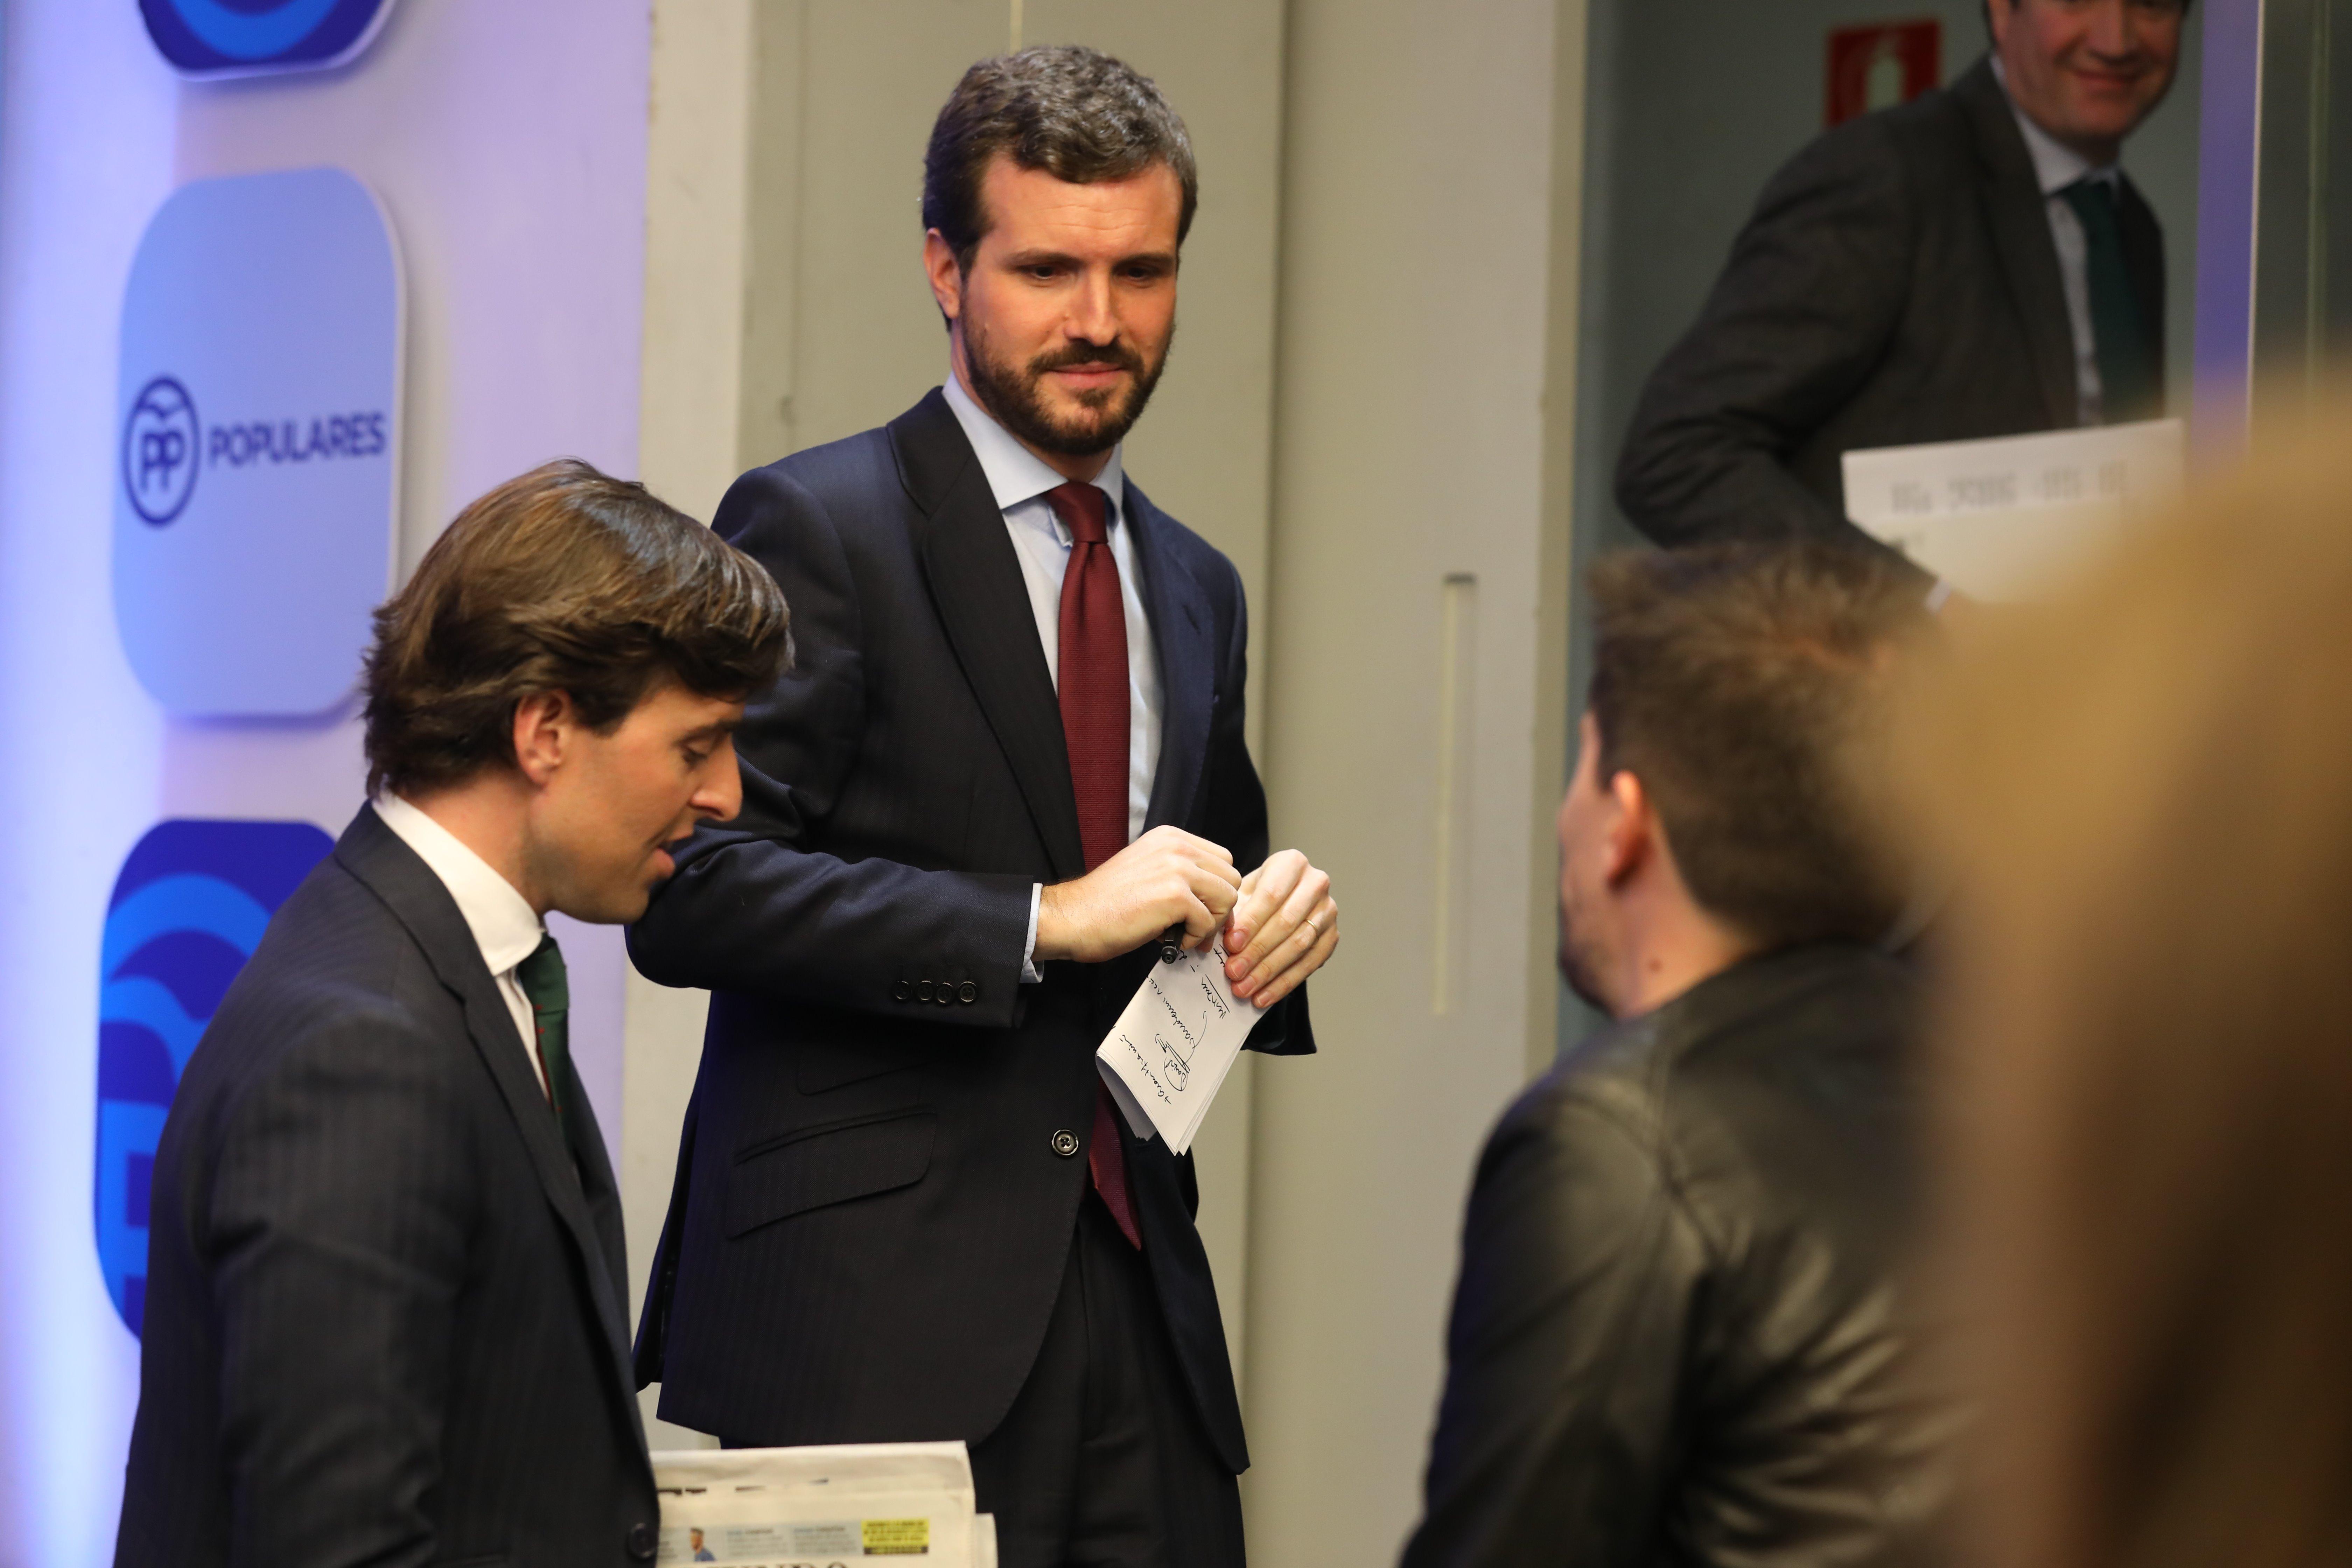 El vicesecretario de Comunicación del PP, Pablo Montesinos, y el presidente del PP, Pablo Casado. Fuente: EP.